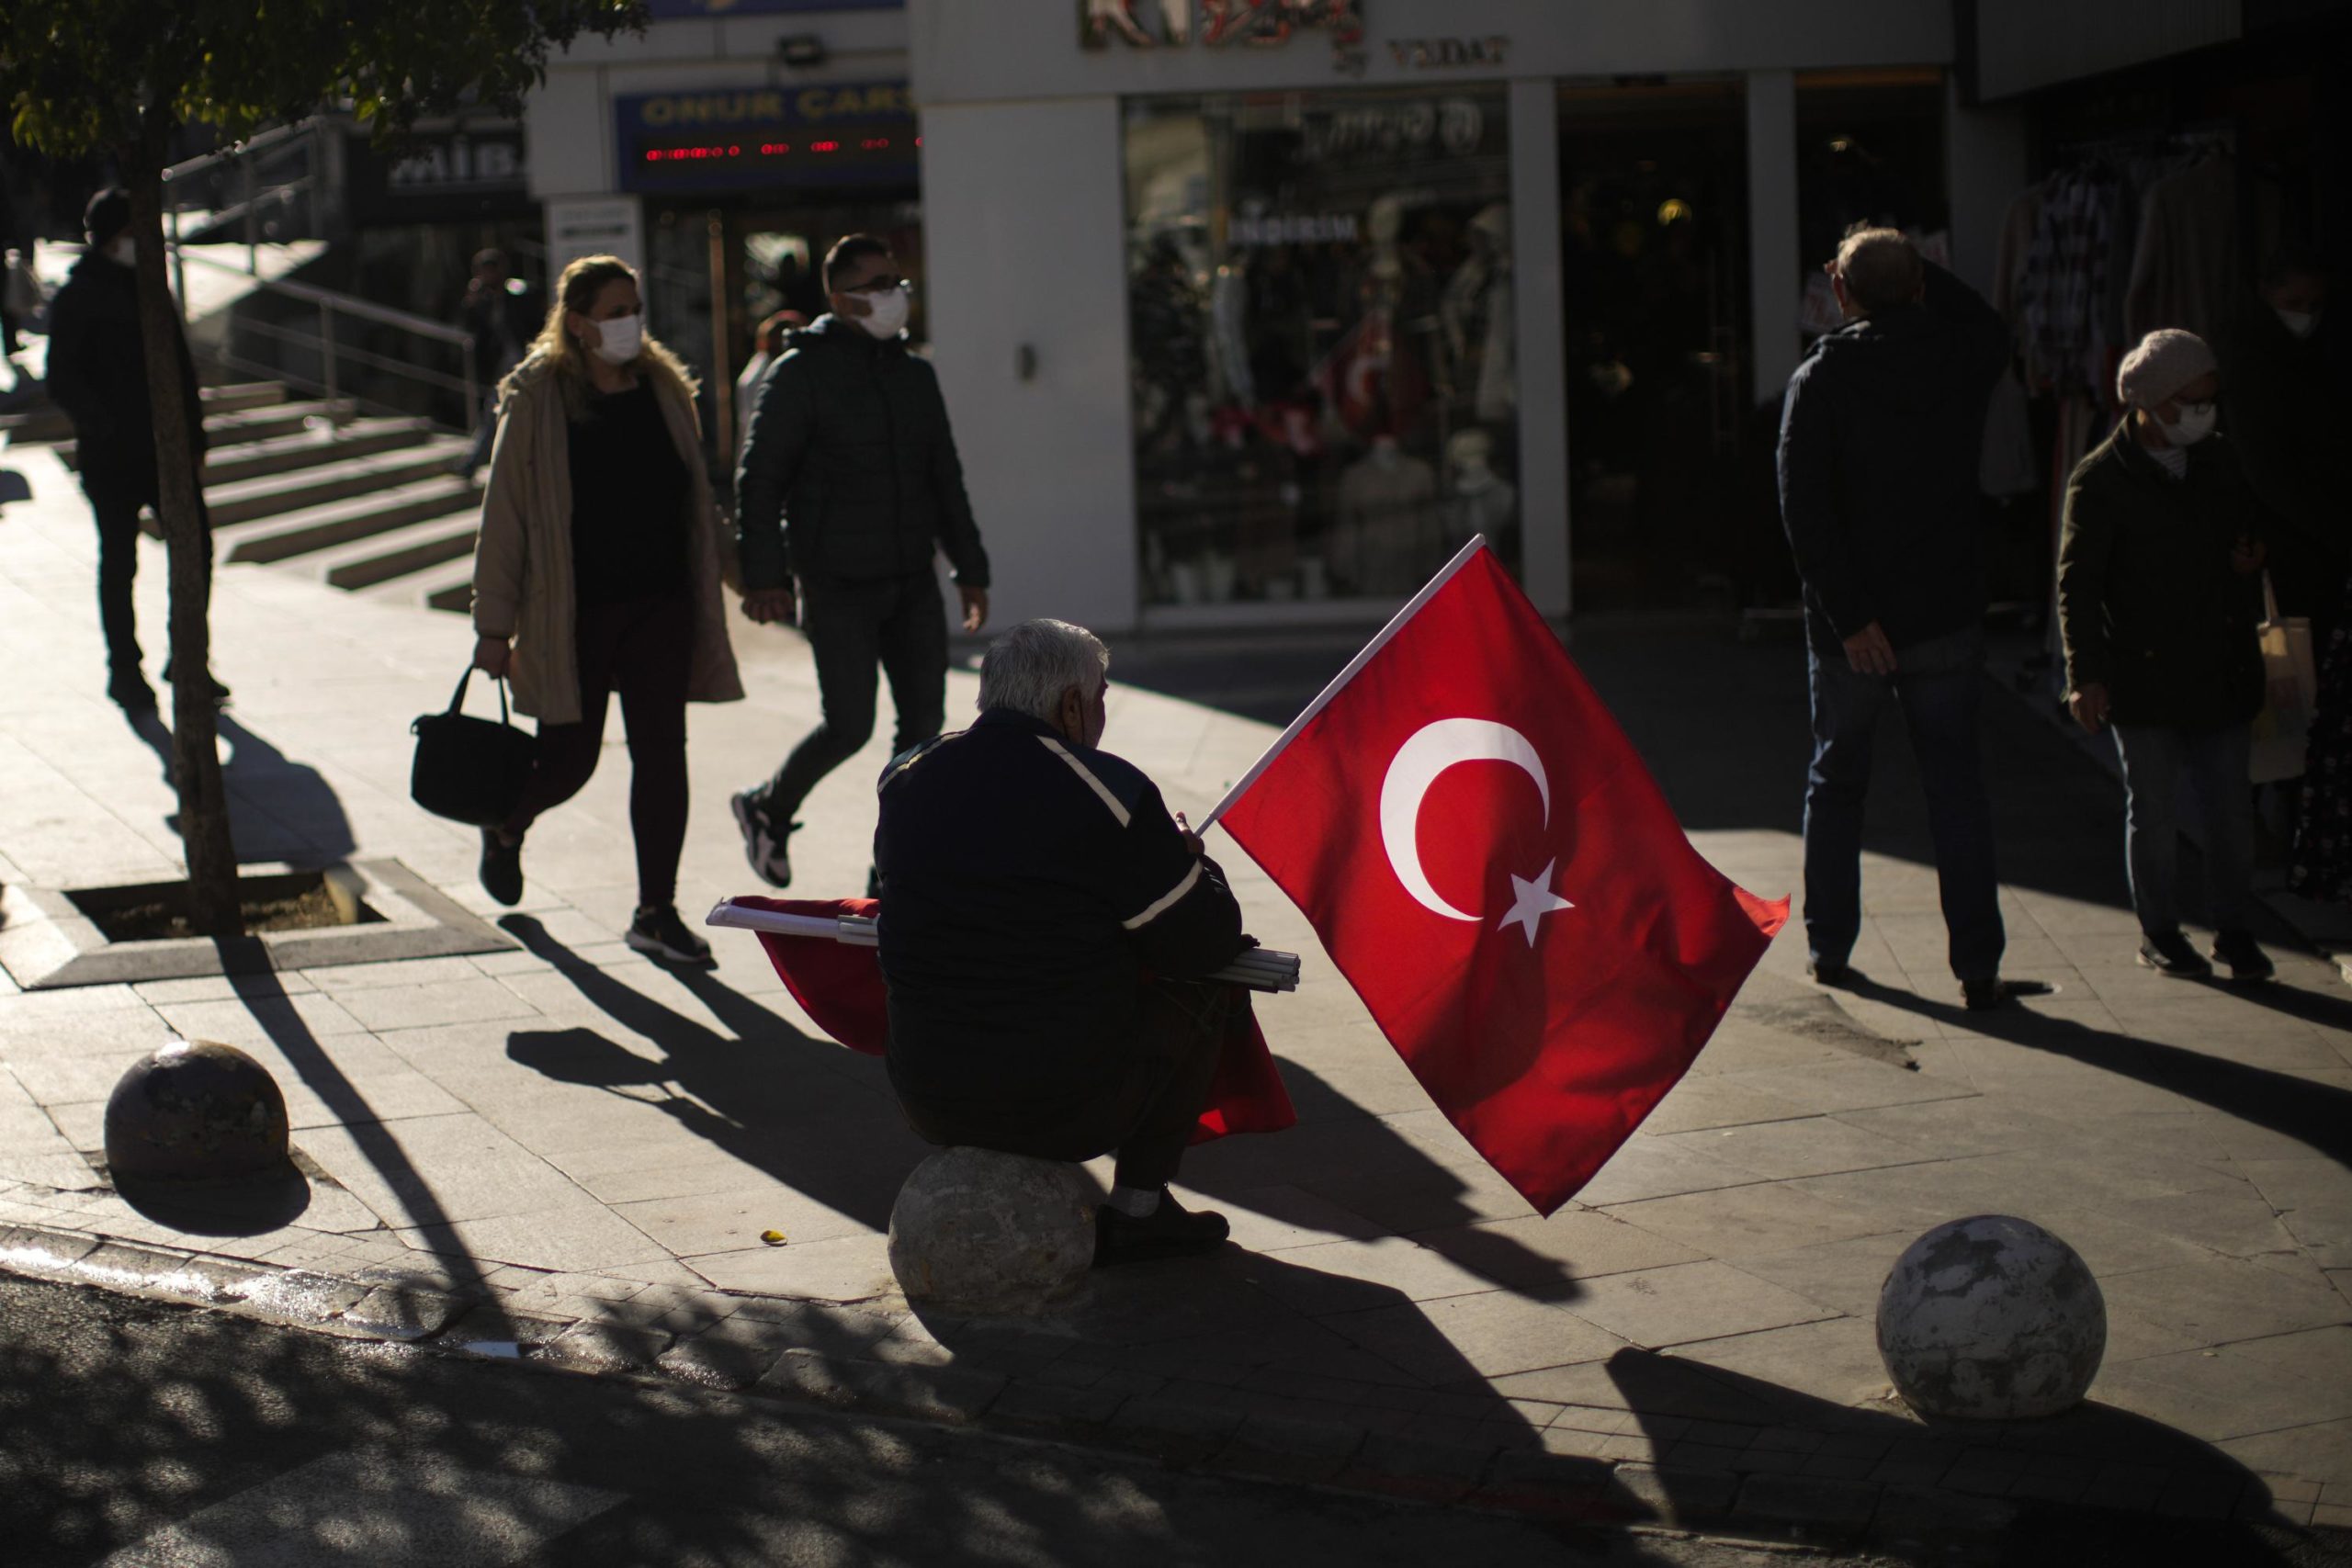 Turkish Lira is crashing. What's the impact? 6